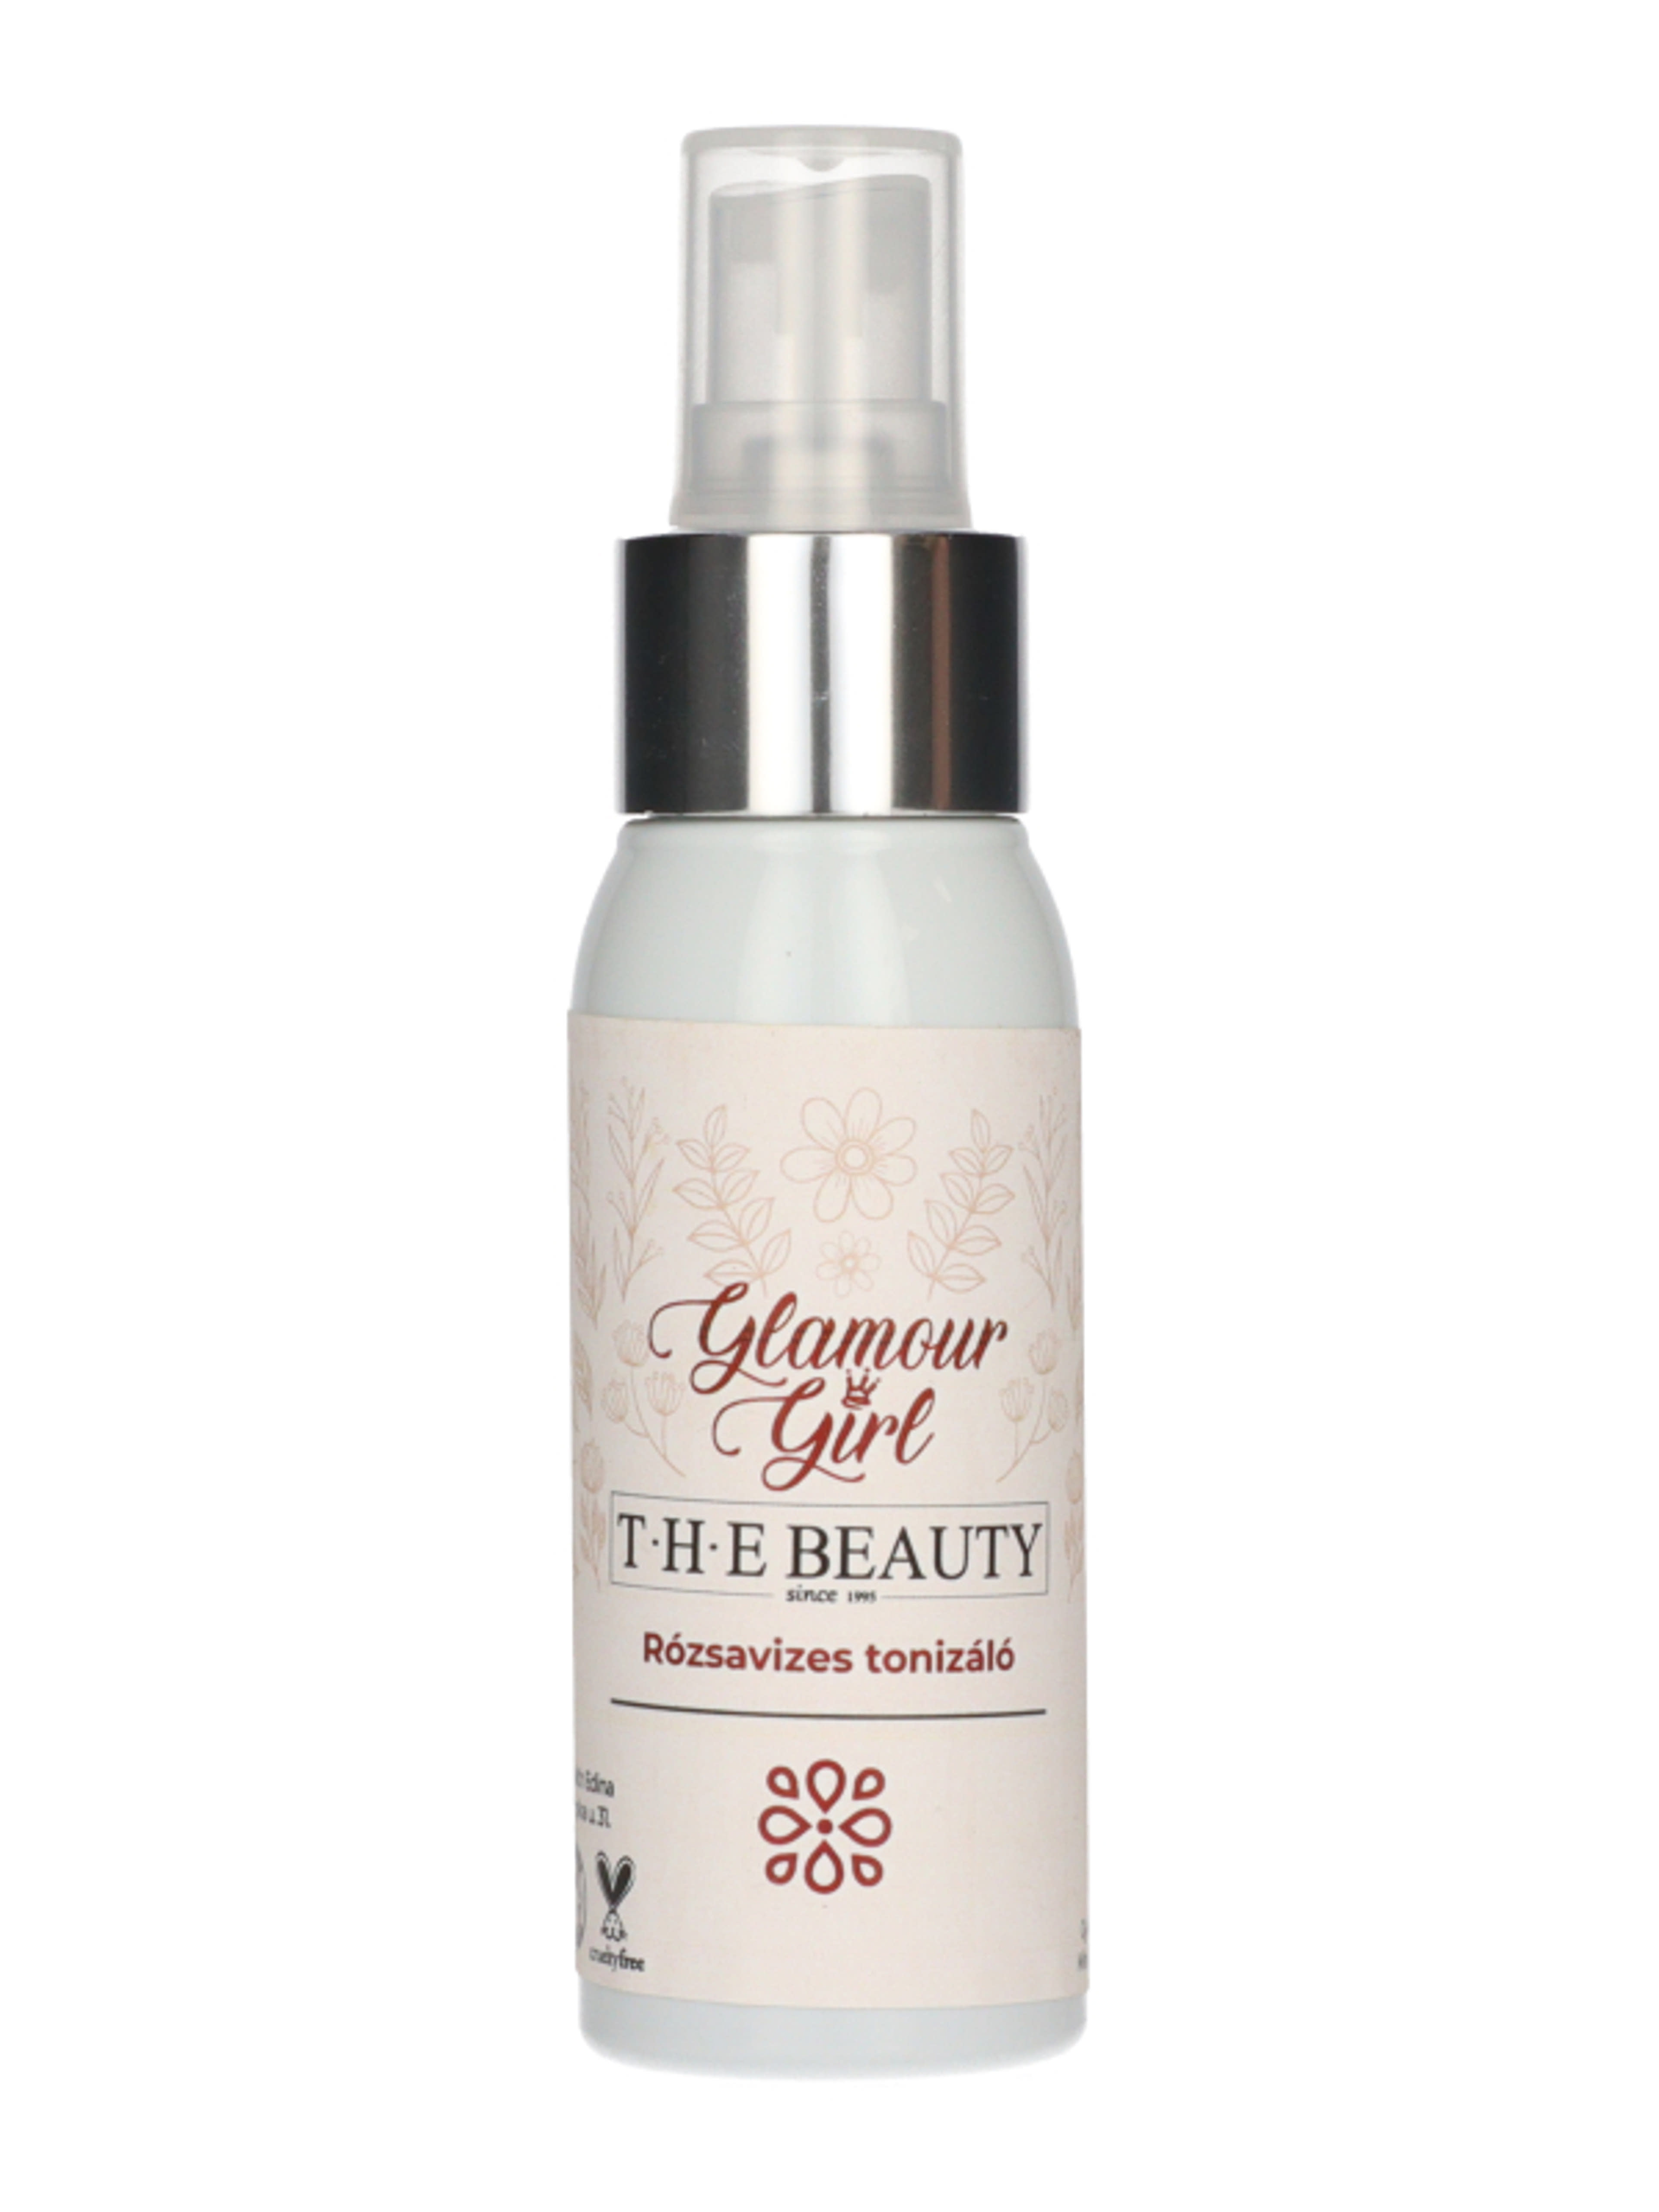 T.H.E Beauty Glamour Girl rózsavizes tonizáló - 60 ml